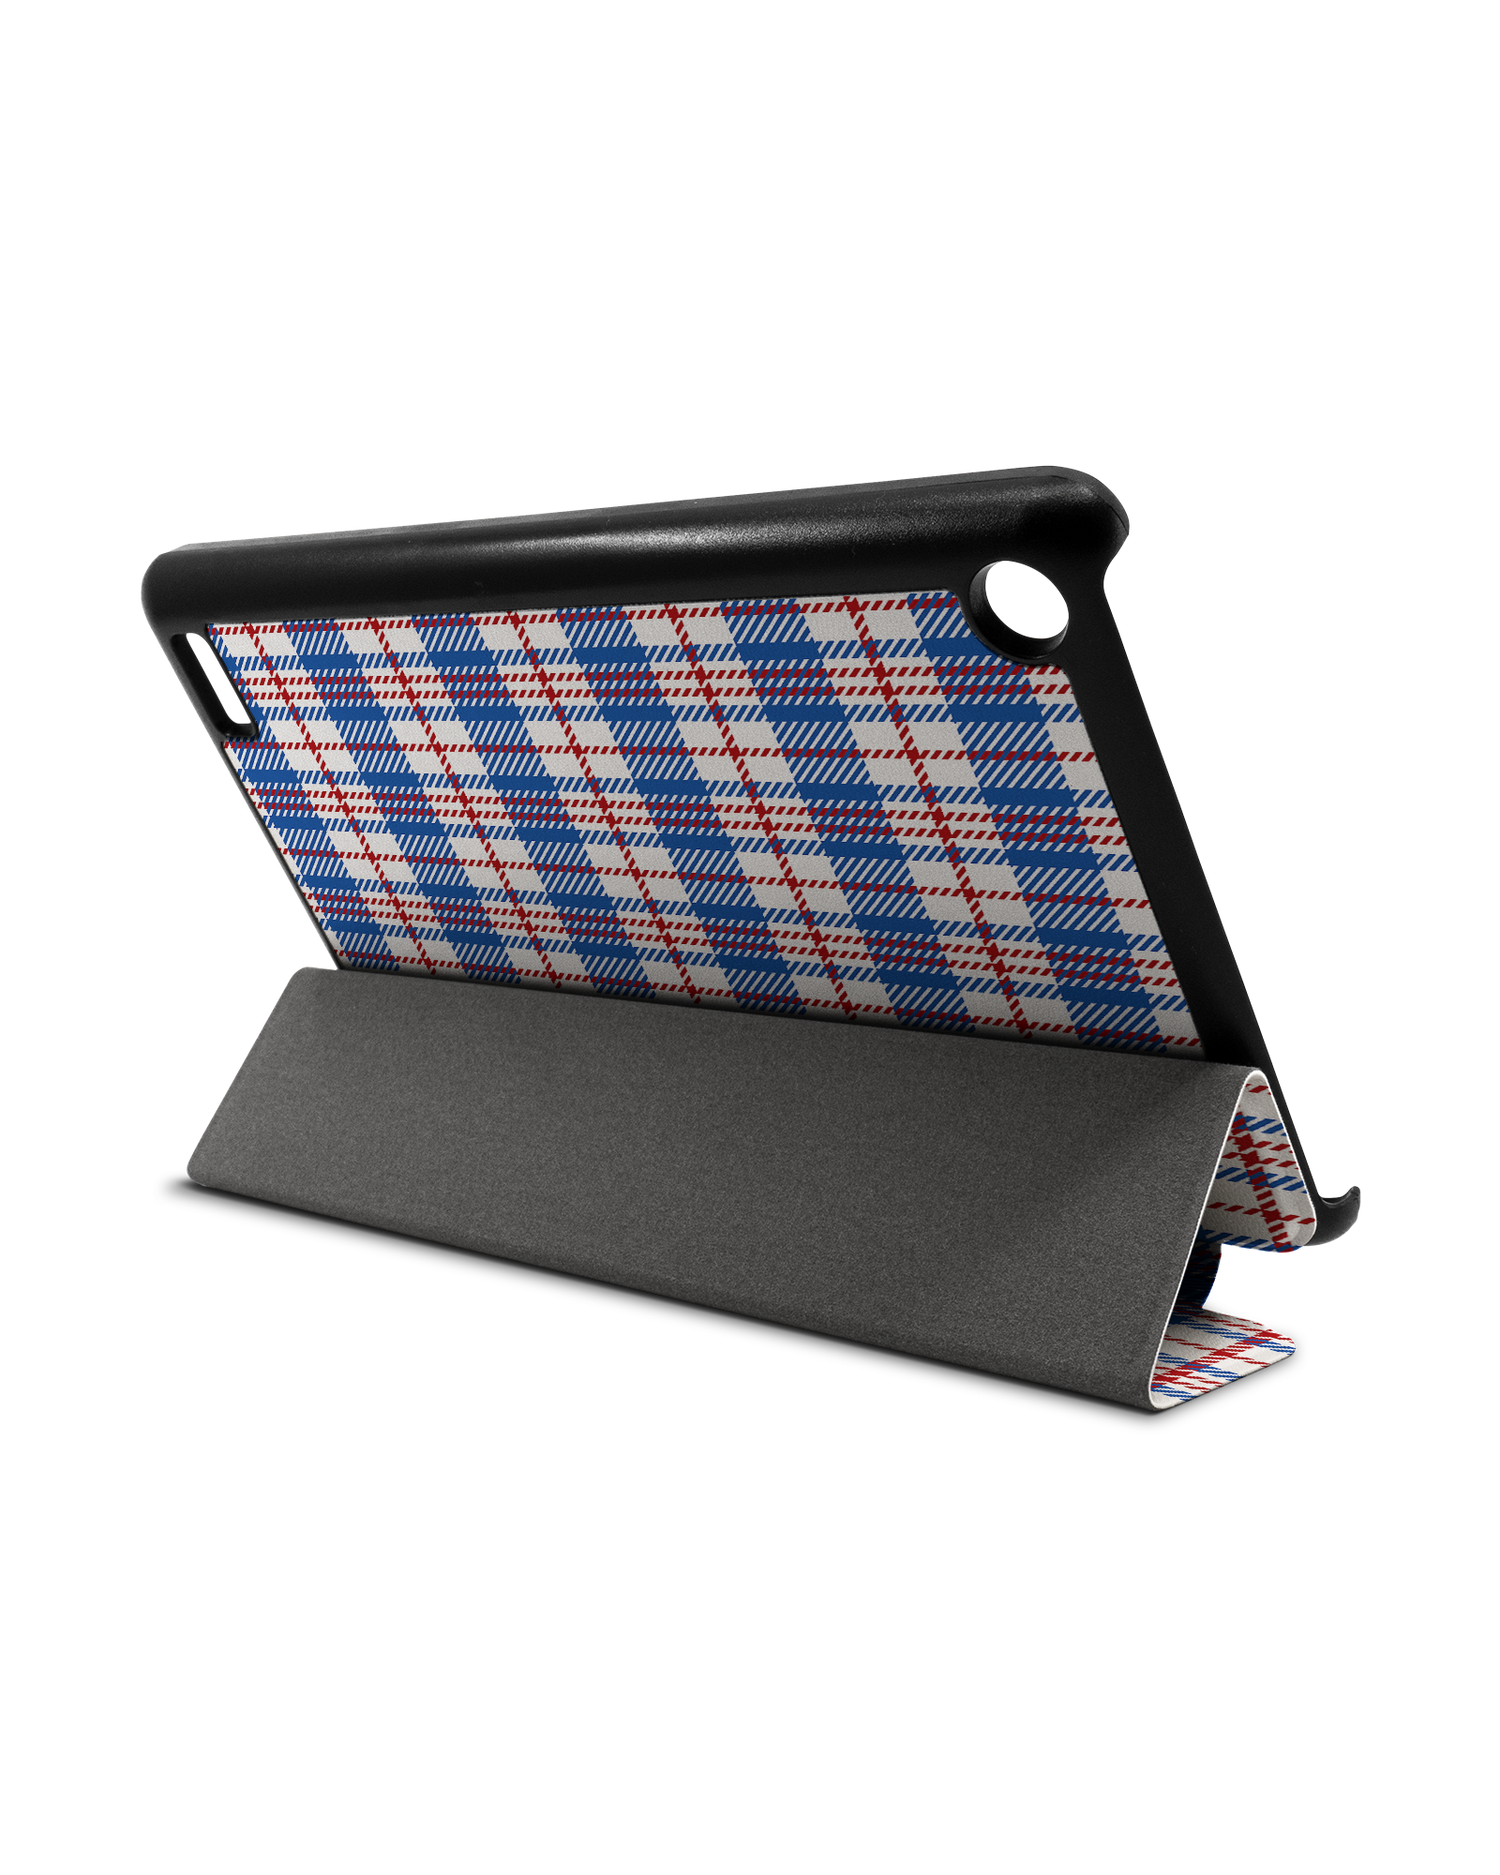 Plaid Market Bag Tablet Smart Case für Amazon Fire 7: Aufgestellt im Querformat